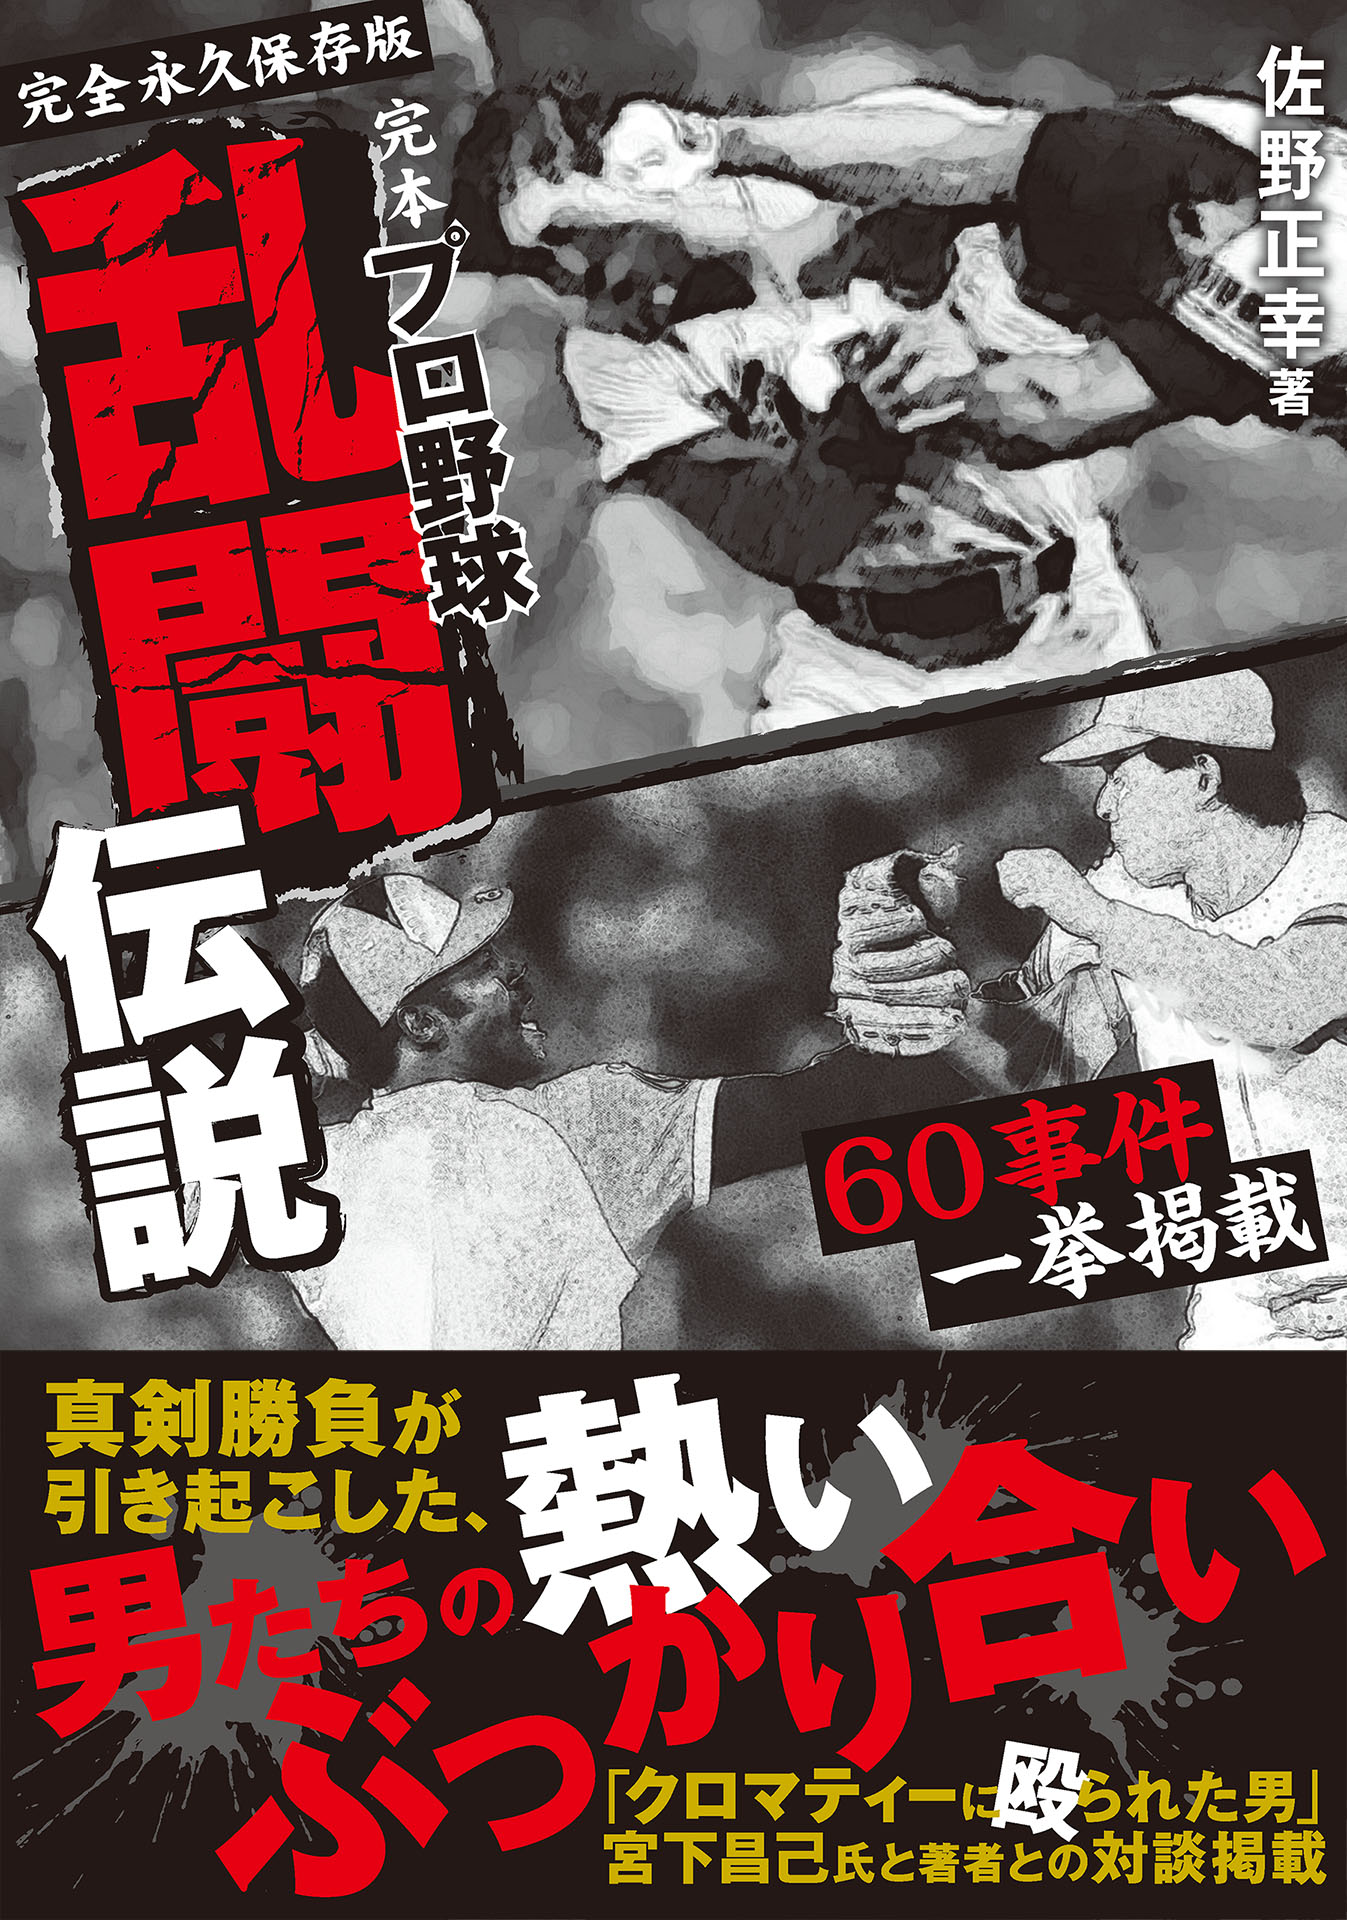 完本 プロ野球乱闘伝説(書籍) - 電子書籍 | U-NEXT 初回600円分無料